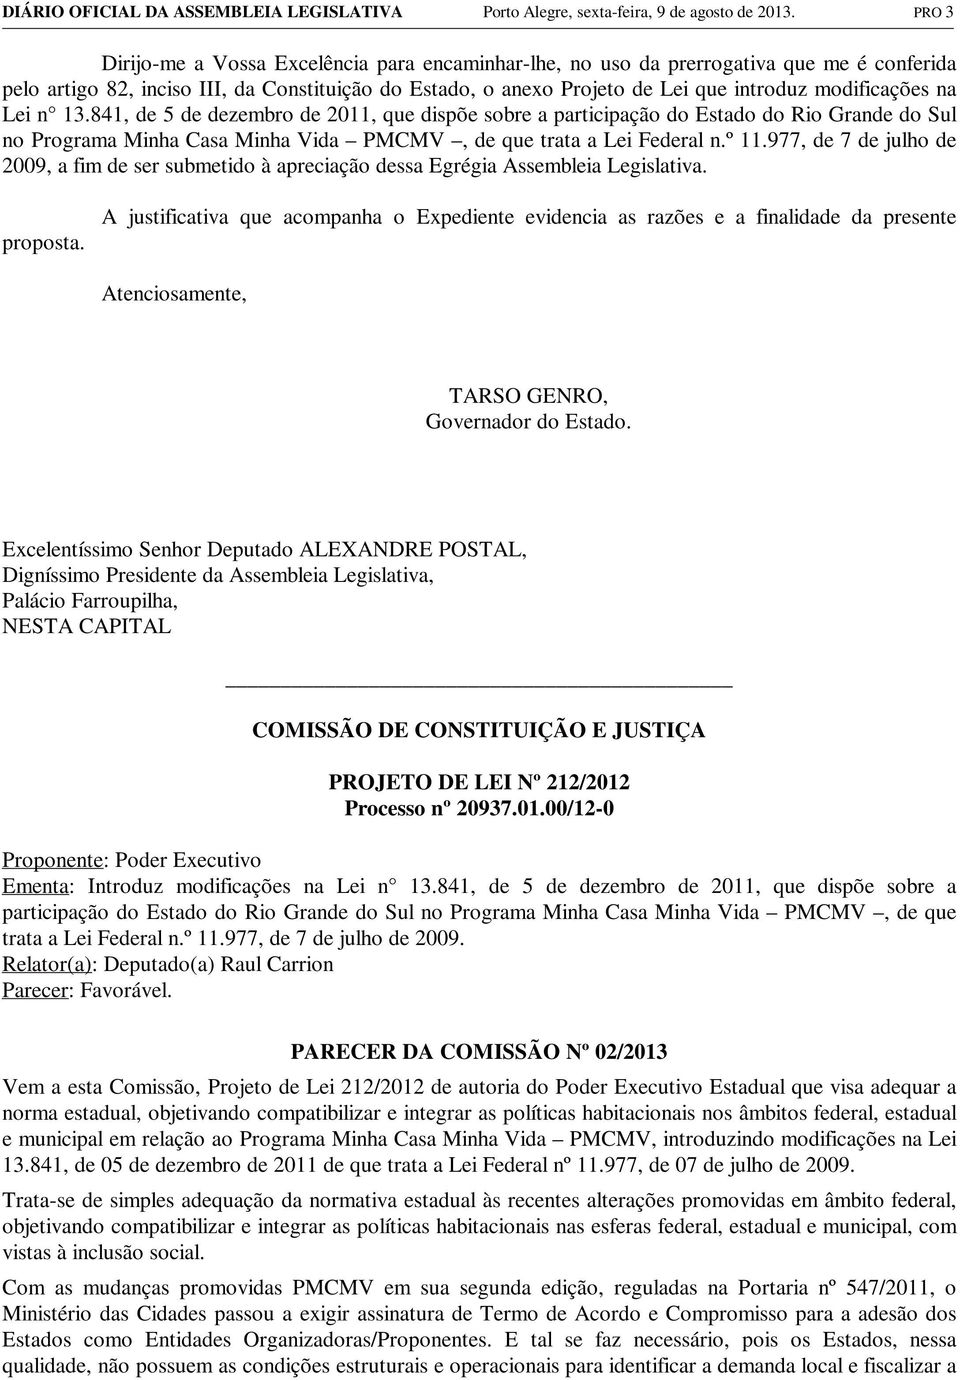 modificações na Lei n 13.841, de 5 de dezembro de 2011, que dispõe sobre a participação do Estado do Rio Grande do Sul no Programa Minha Casa Minha Vida PMCMV, de que trata a Lei Federal n.º 11.